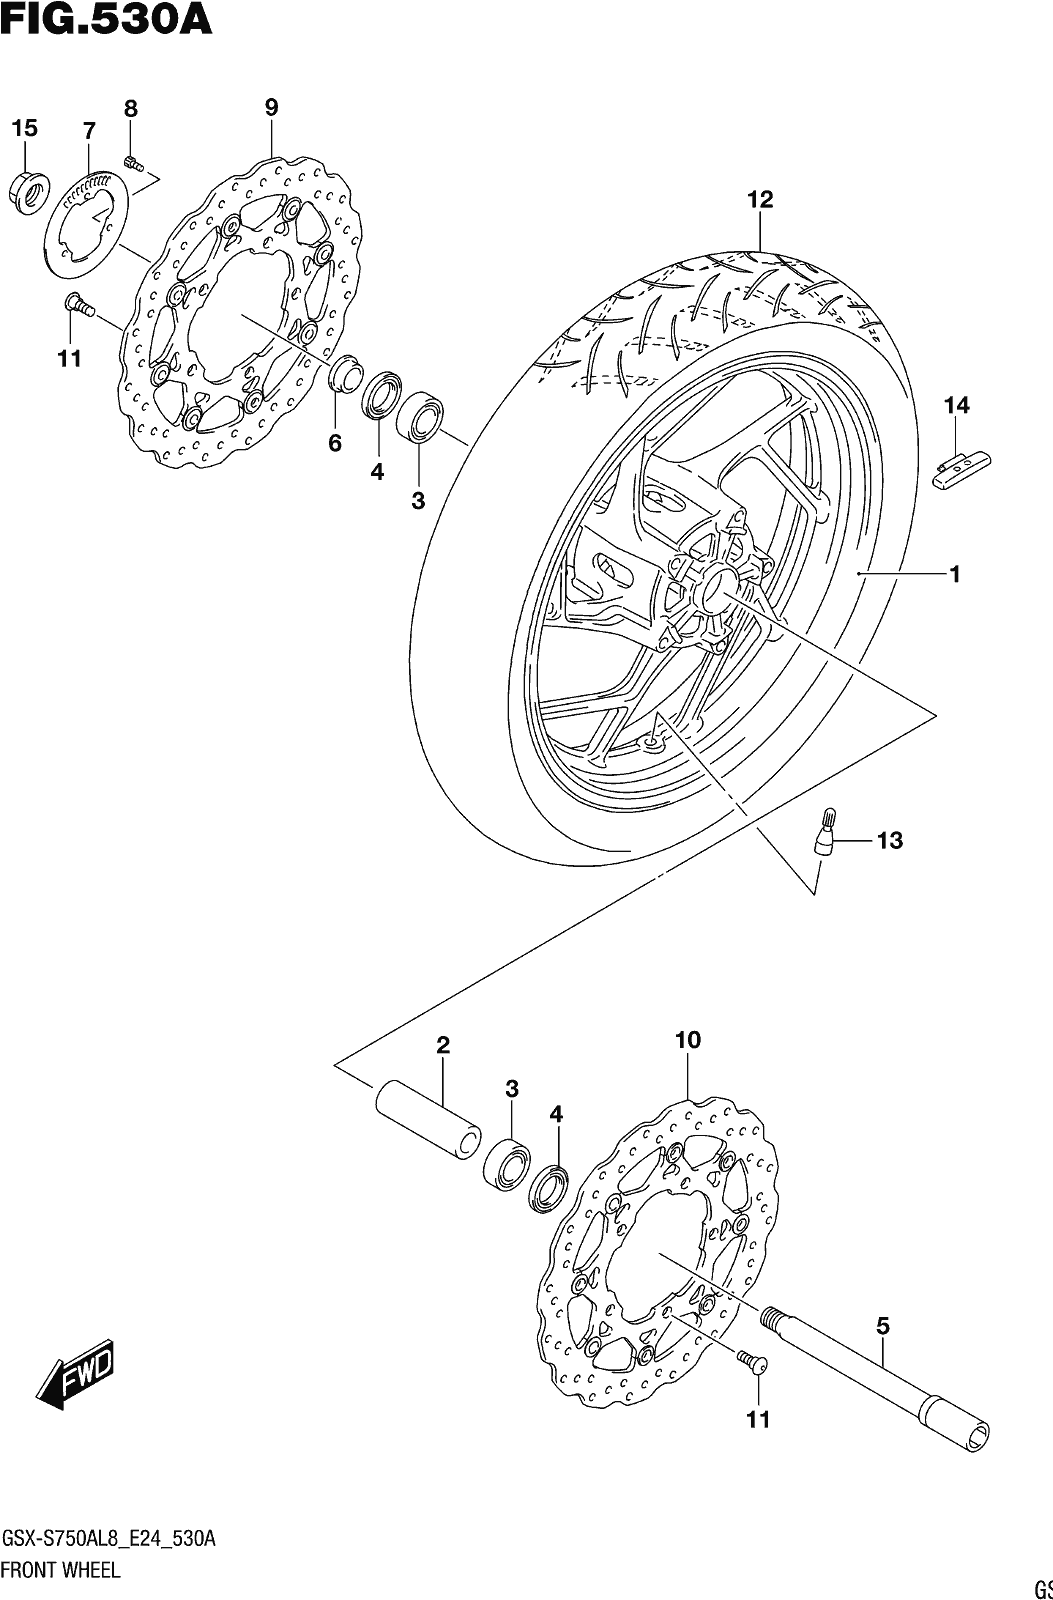 Fig.530a Front Wheel (gsx-s750al8 E24)